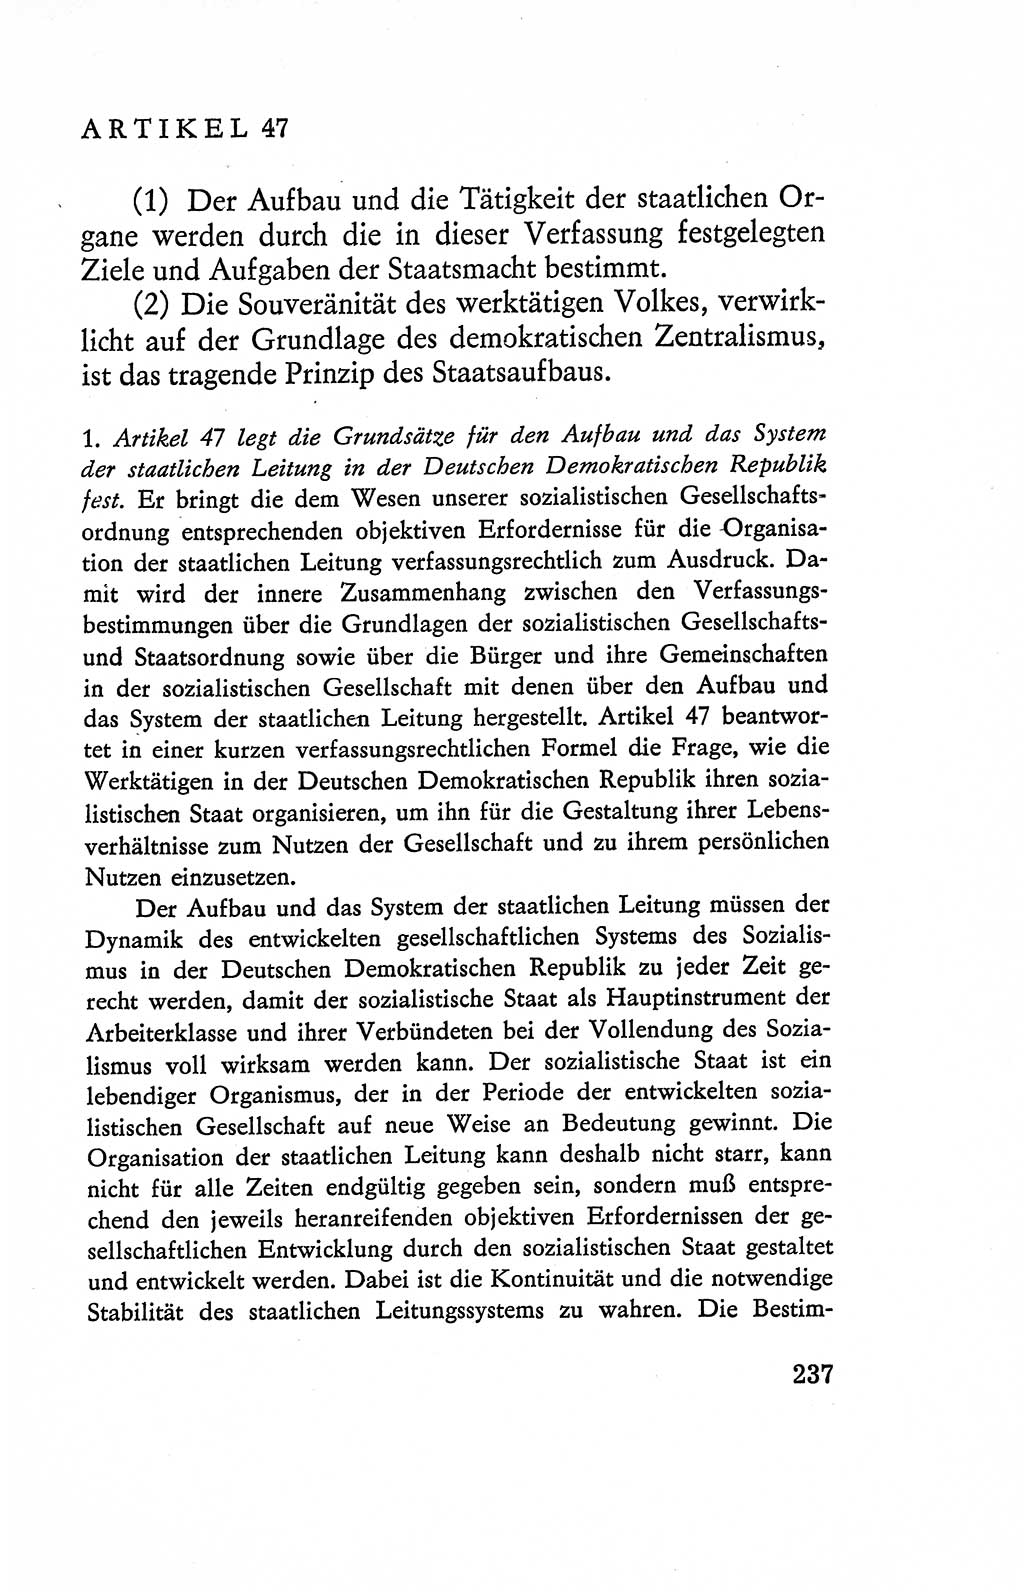 Verfassung der Deutschen Demokratischen Republik (DDR), Dokumente, Kommentar 1969, Band 2, Seite 237 (Verf. DDR Dok. Komm. 1969, Bd. 2, S. 237)